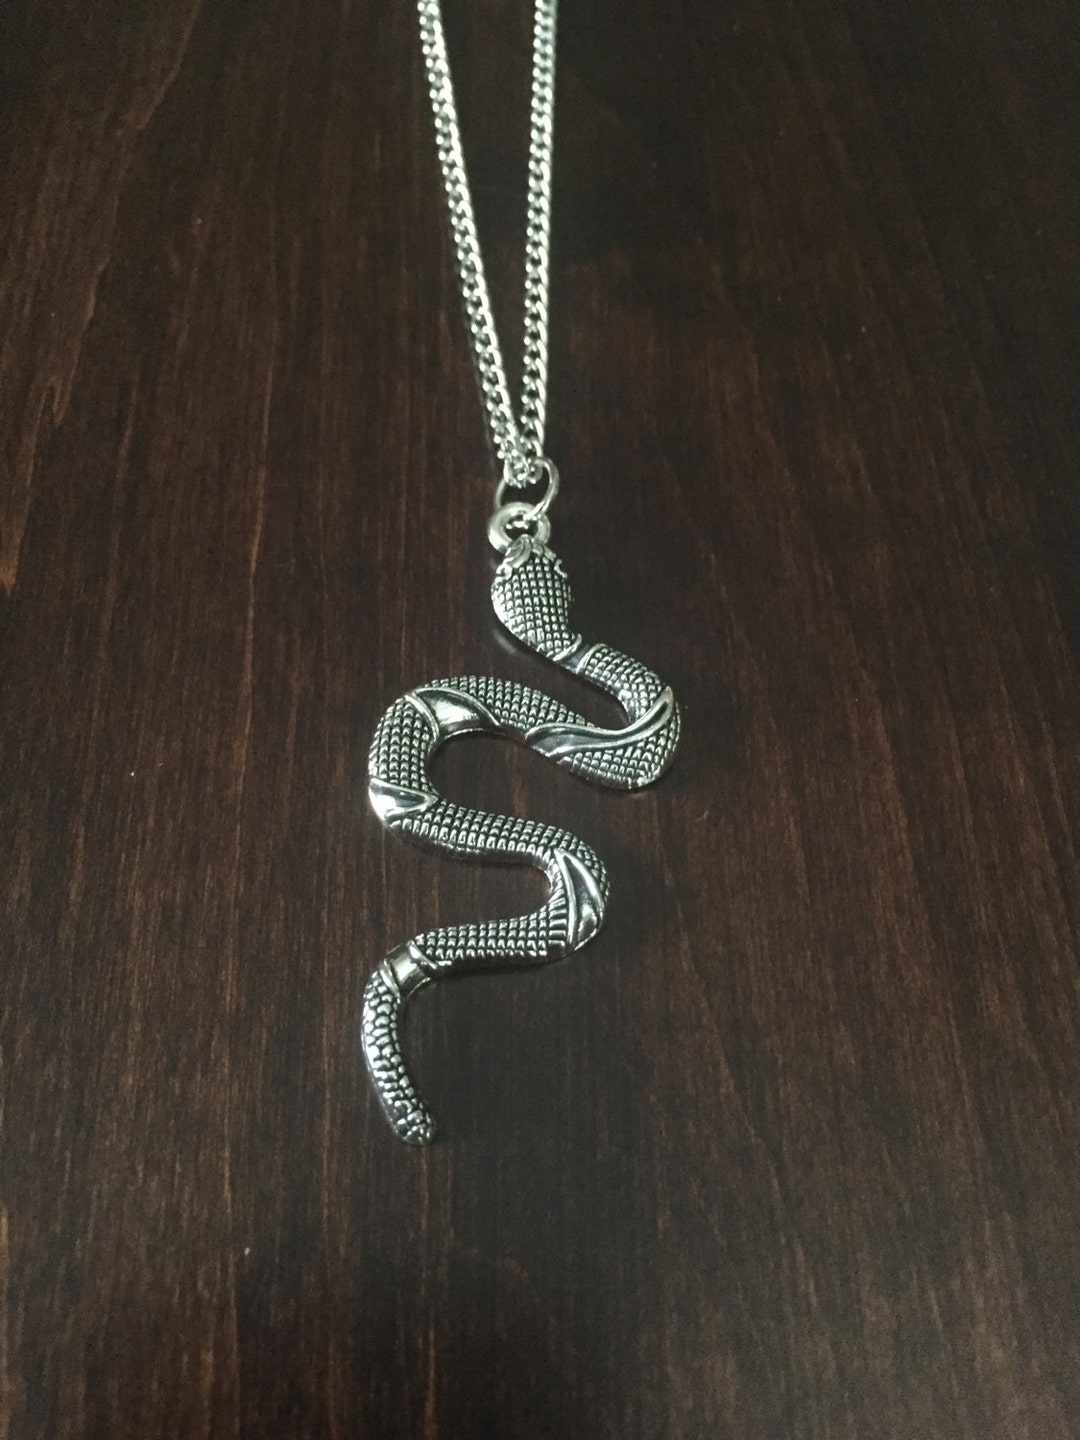 Snake Necklace, Snake Jewelry, Snake Pendant, Snake, Snakes, Silver ...